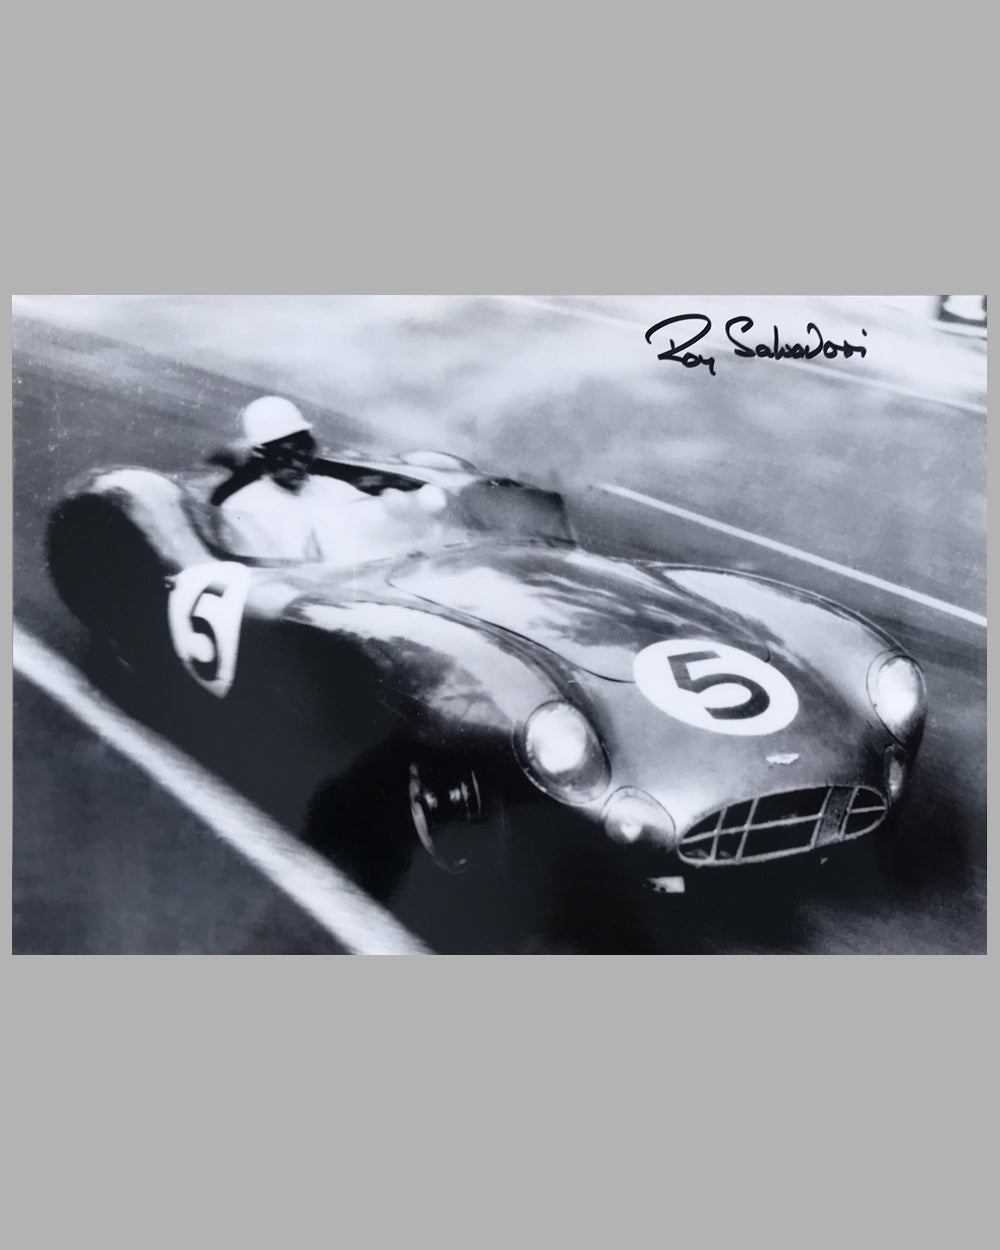 Roy Salvadori 1959 Le Mans b&w autographed photograph